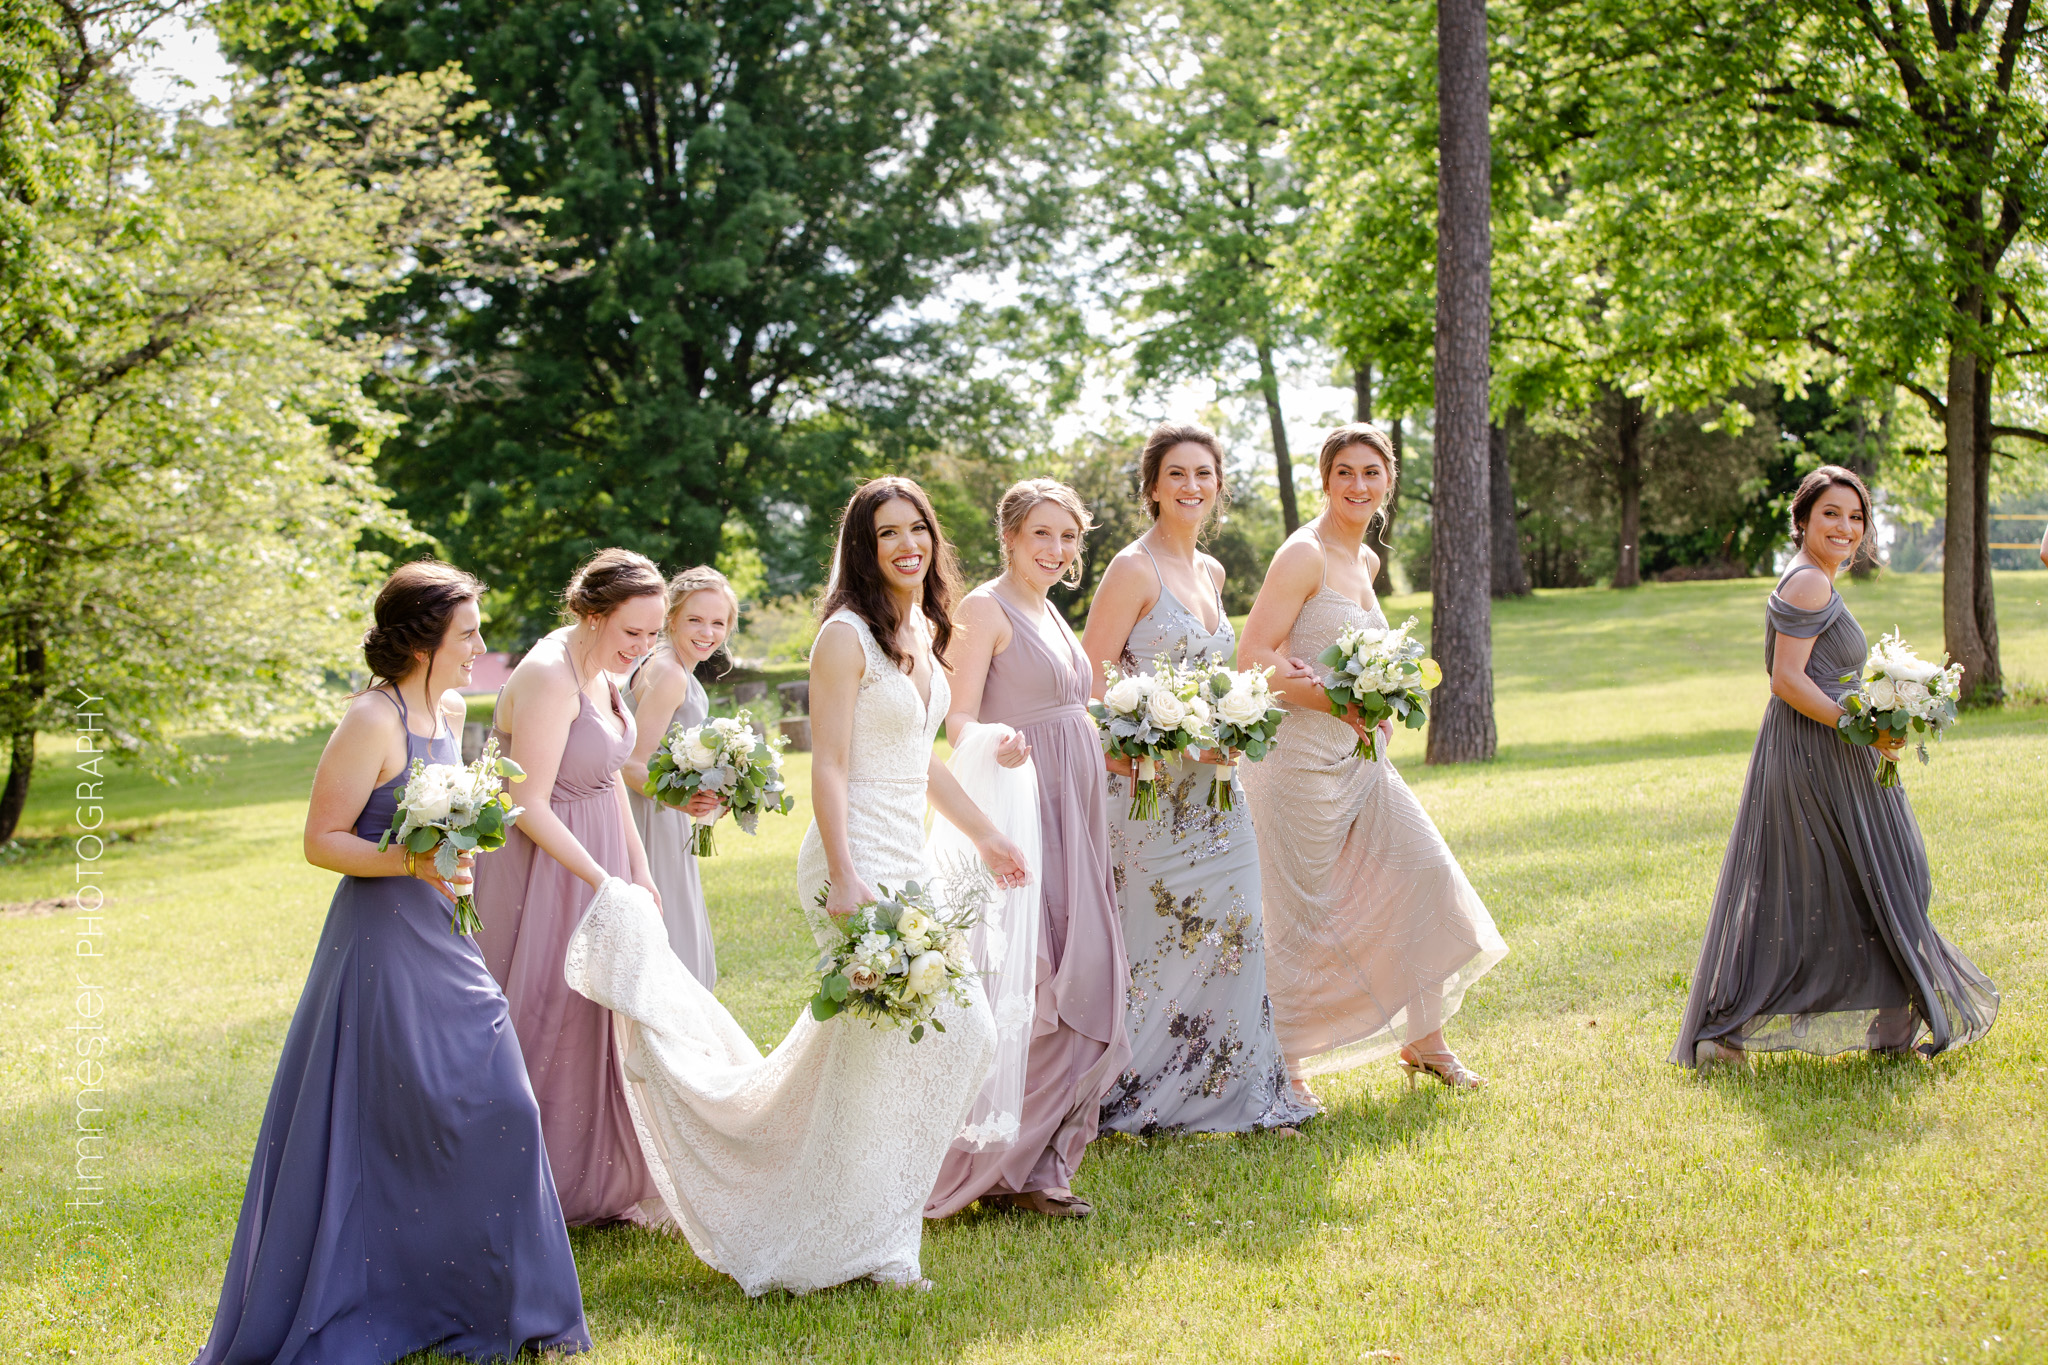 Beautiful bride and bridesmaids at Barn at Valhalla wedding in Chapel Hill, NC.